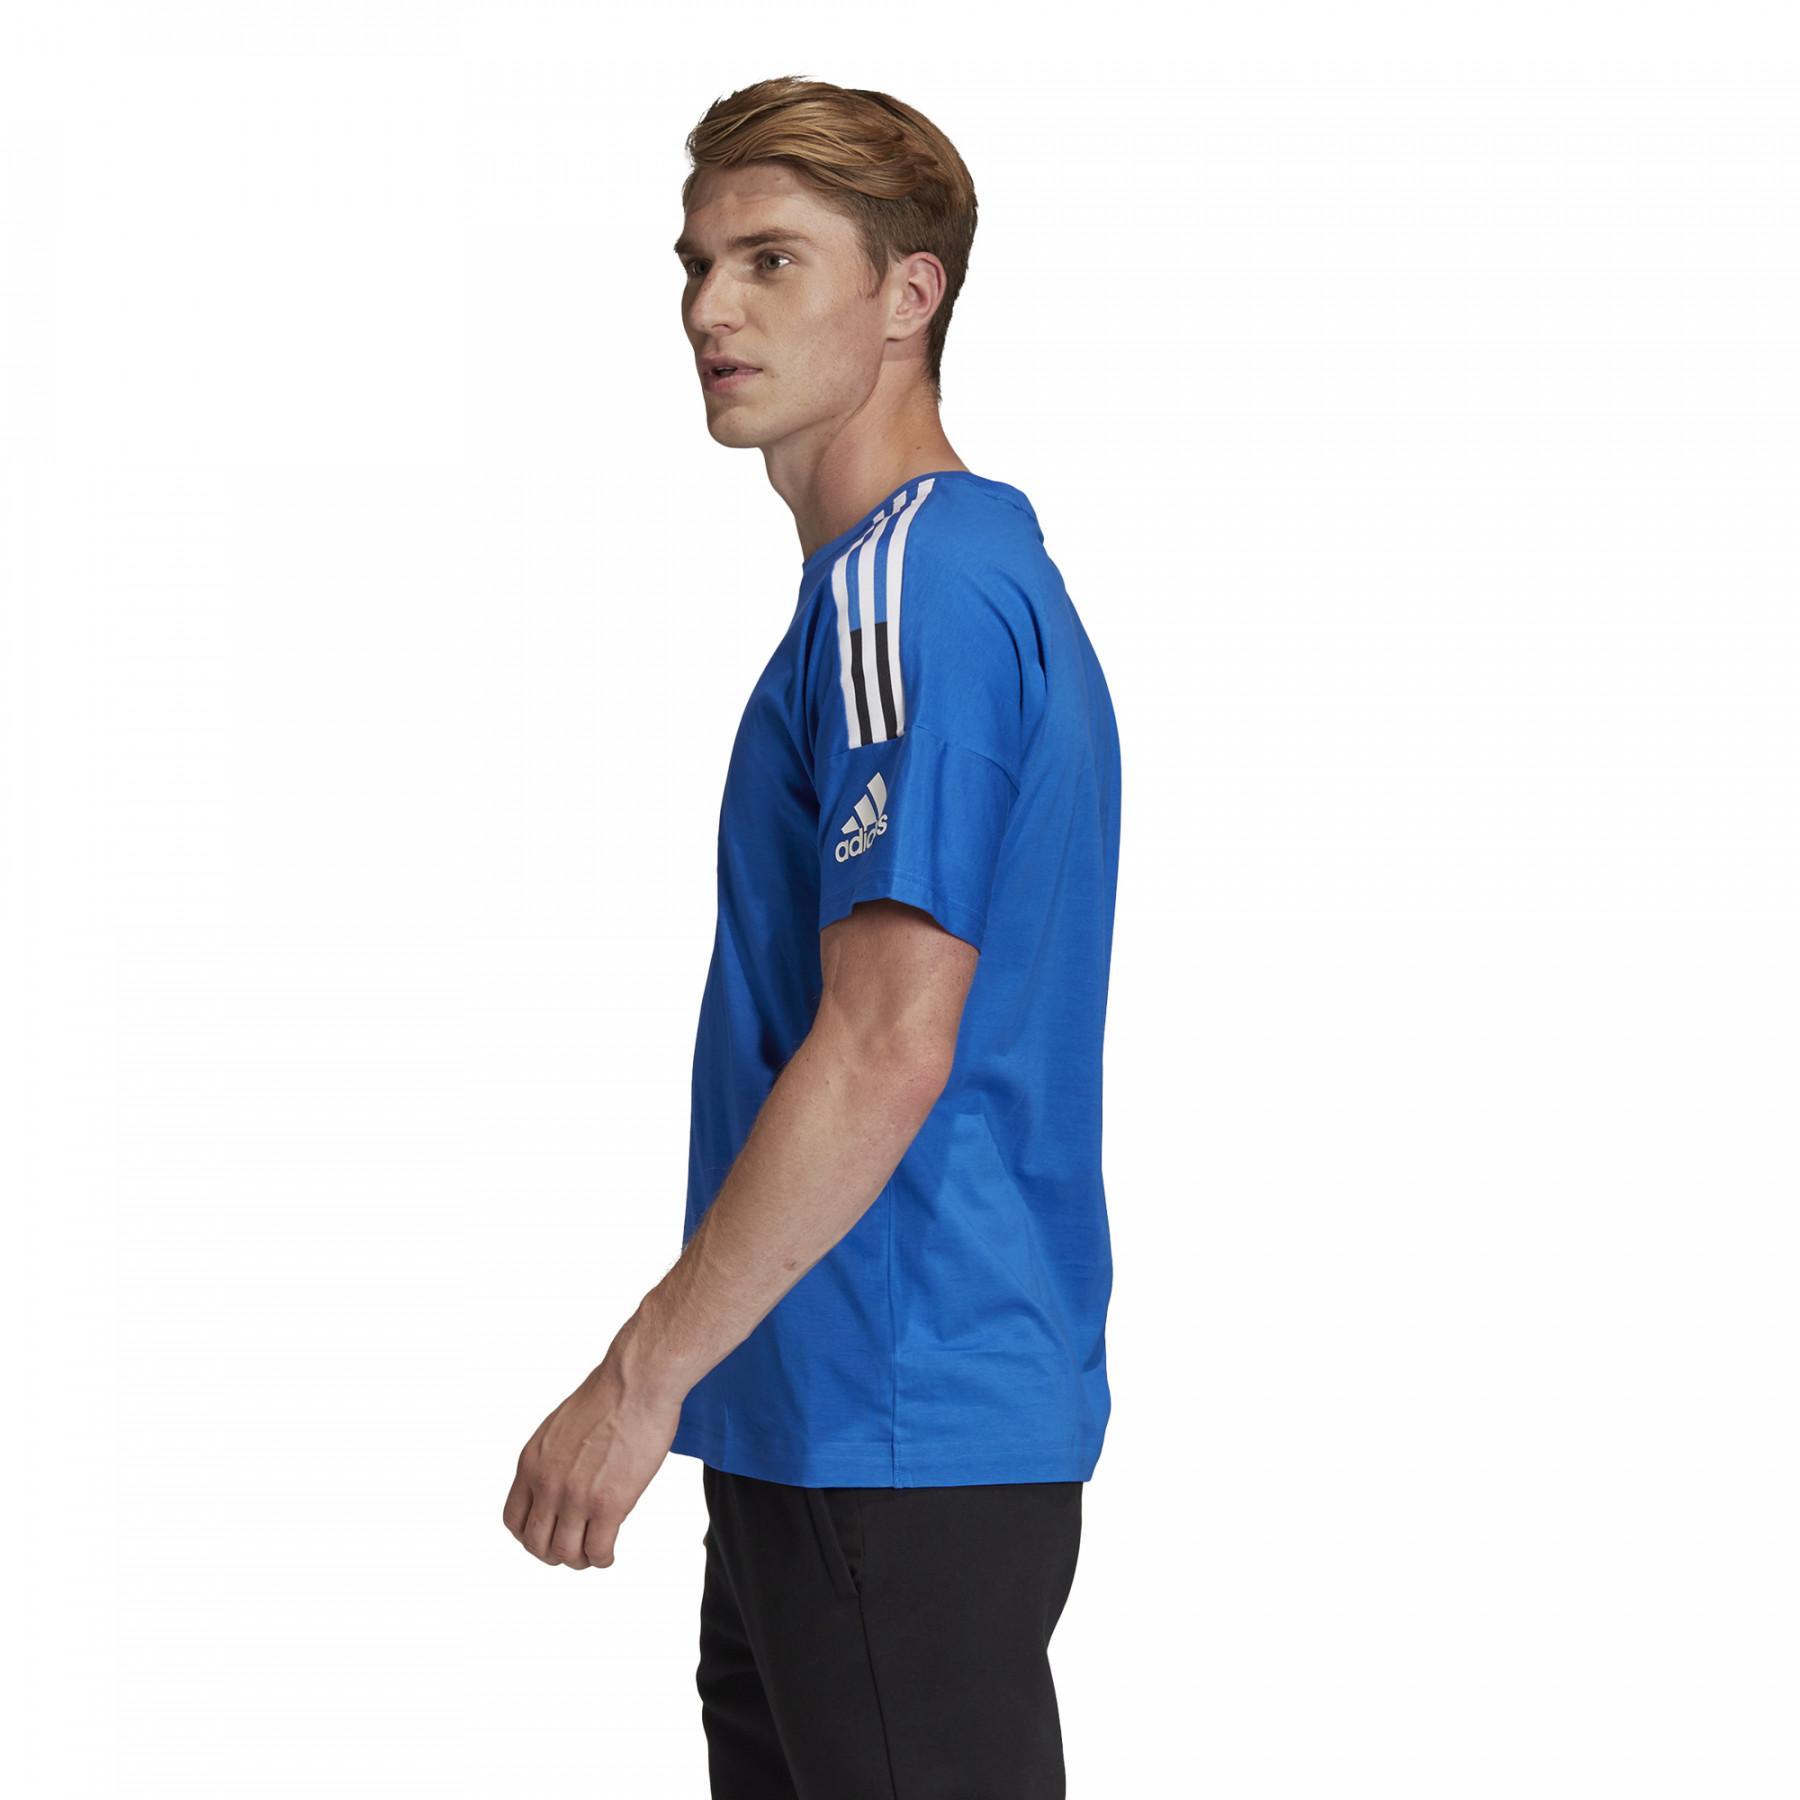 Koszulka adidas Z.N.E. 3-Stripes